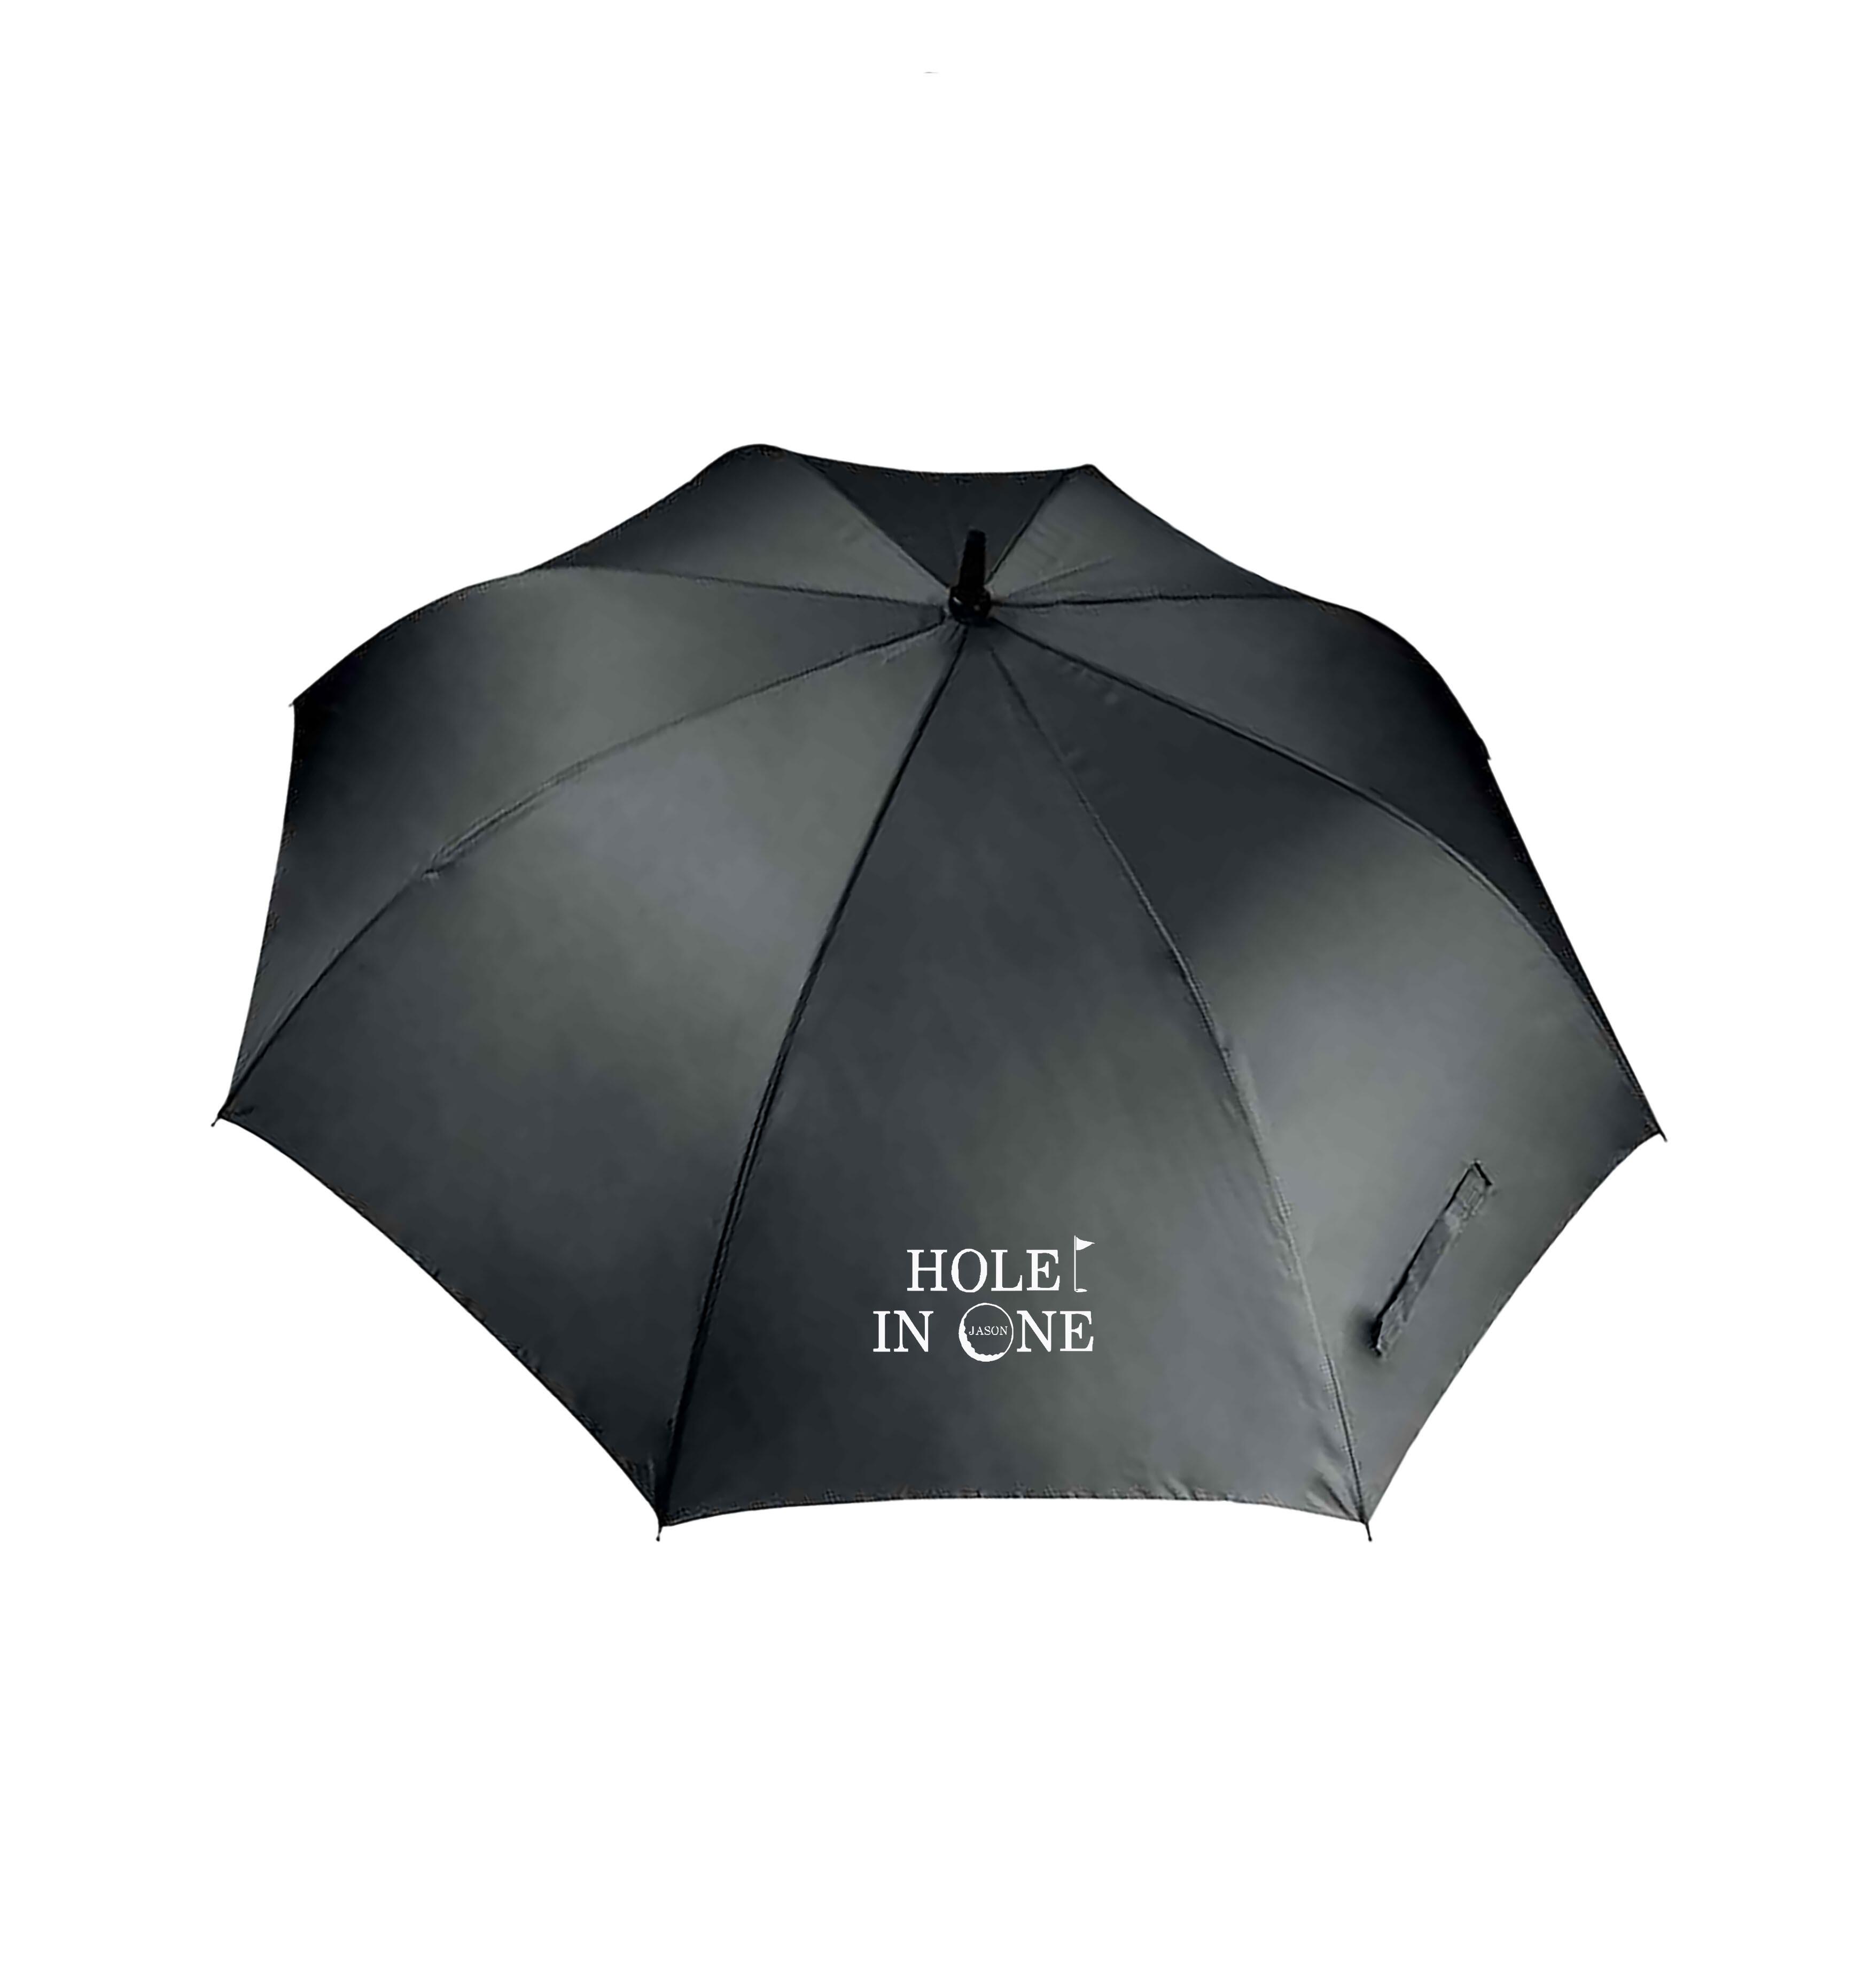 Hole in 1 Design Large Golf Umbrella Black